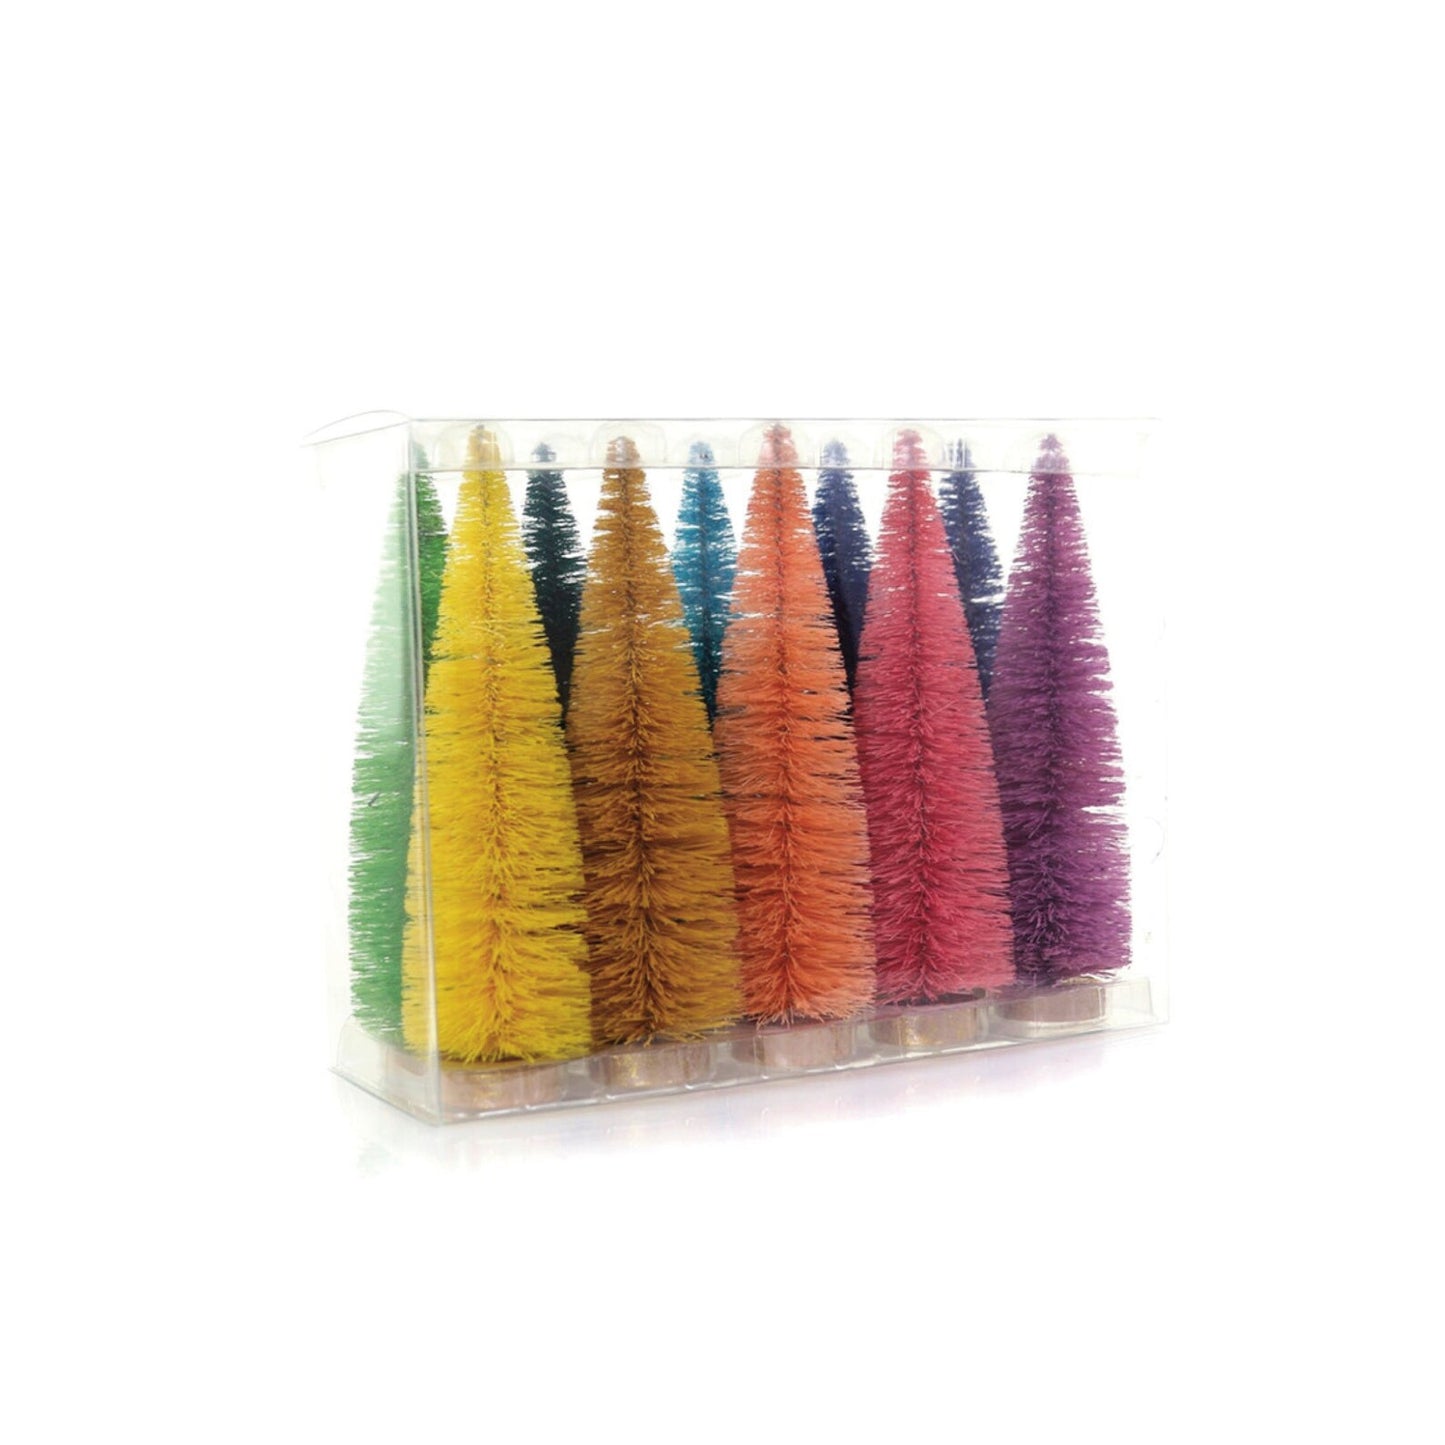 Multicolor Short-Stem Bottlebrush Trees Set of 10